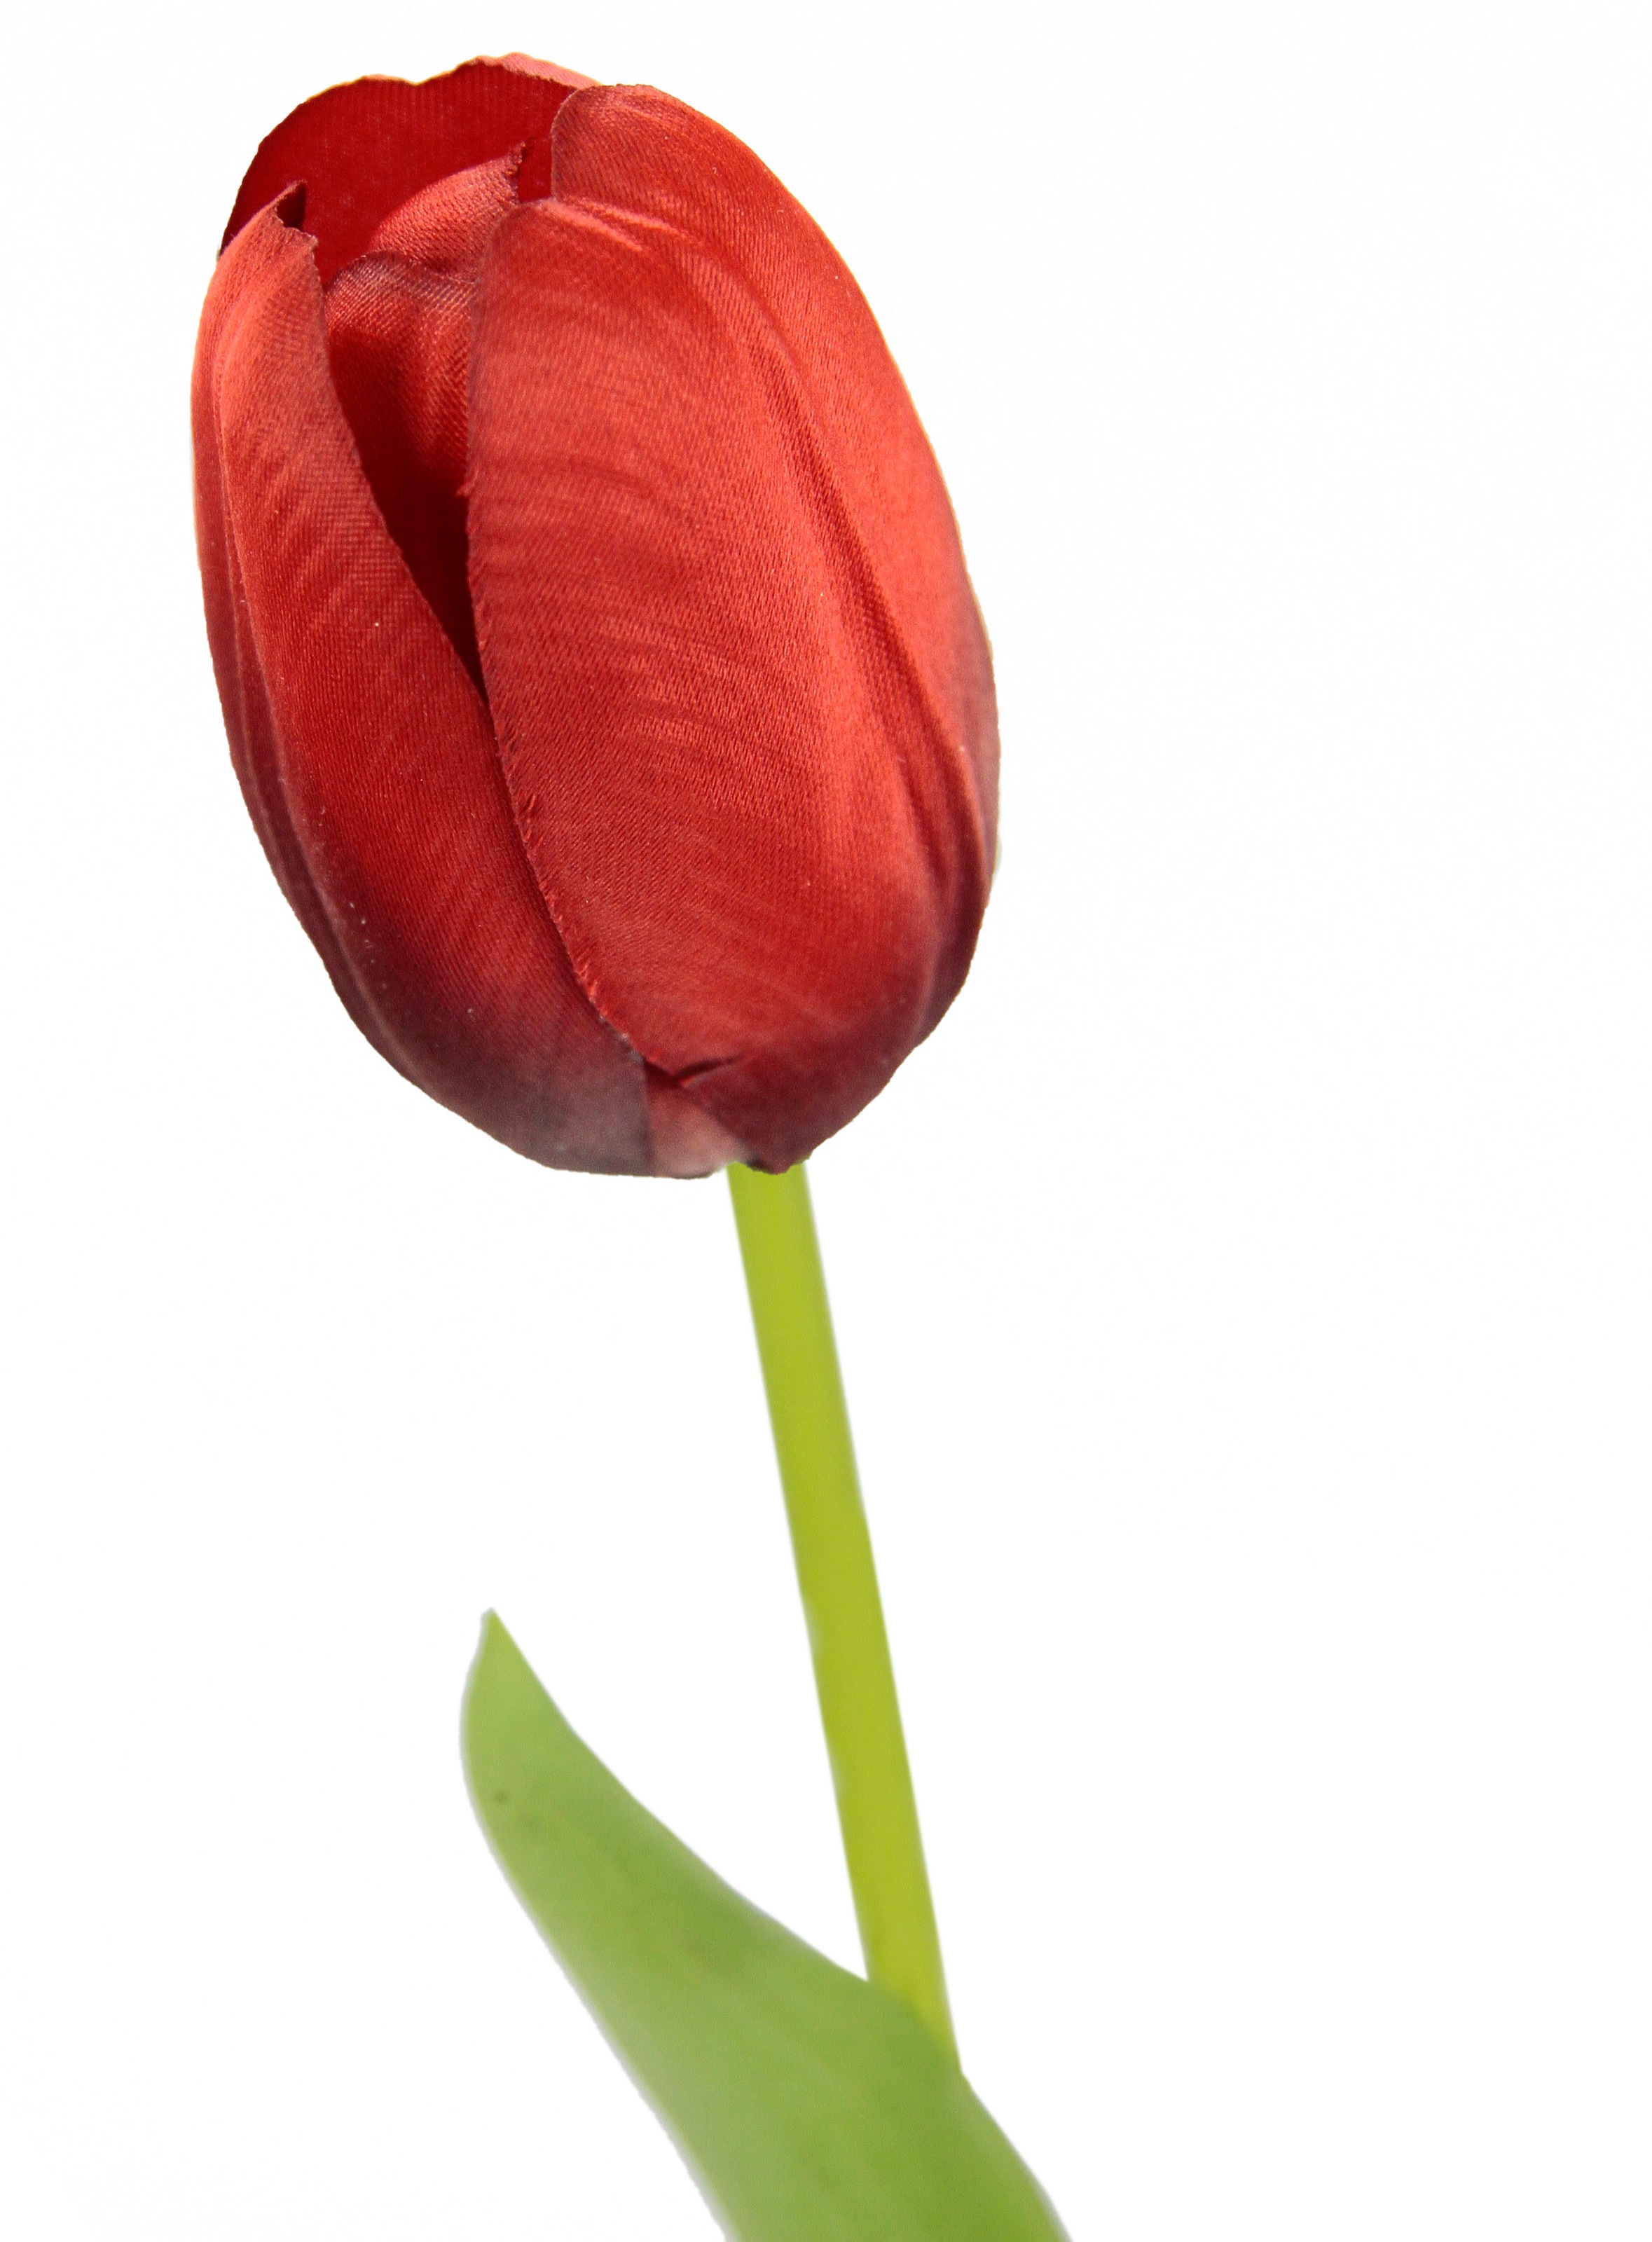 »Real kaufen Touch Tulpen«, I.GE.A. auf Kunstblume künstliche Stielblume Raten 5er Kunstblumen, Tulpenknospen, Set